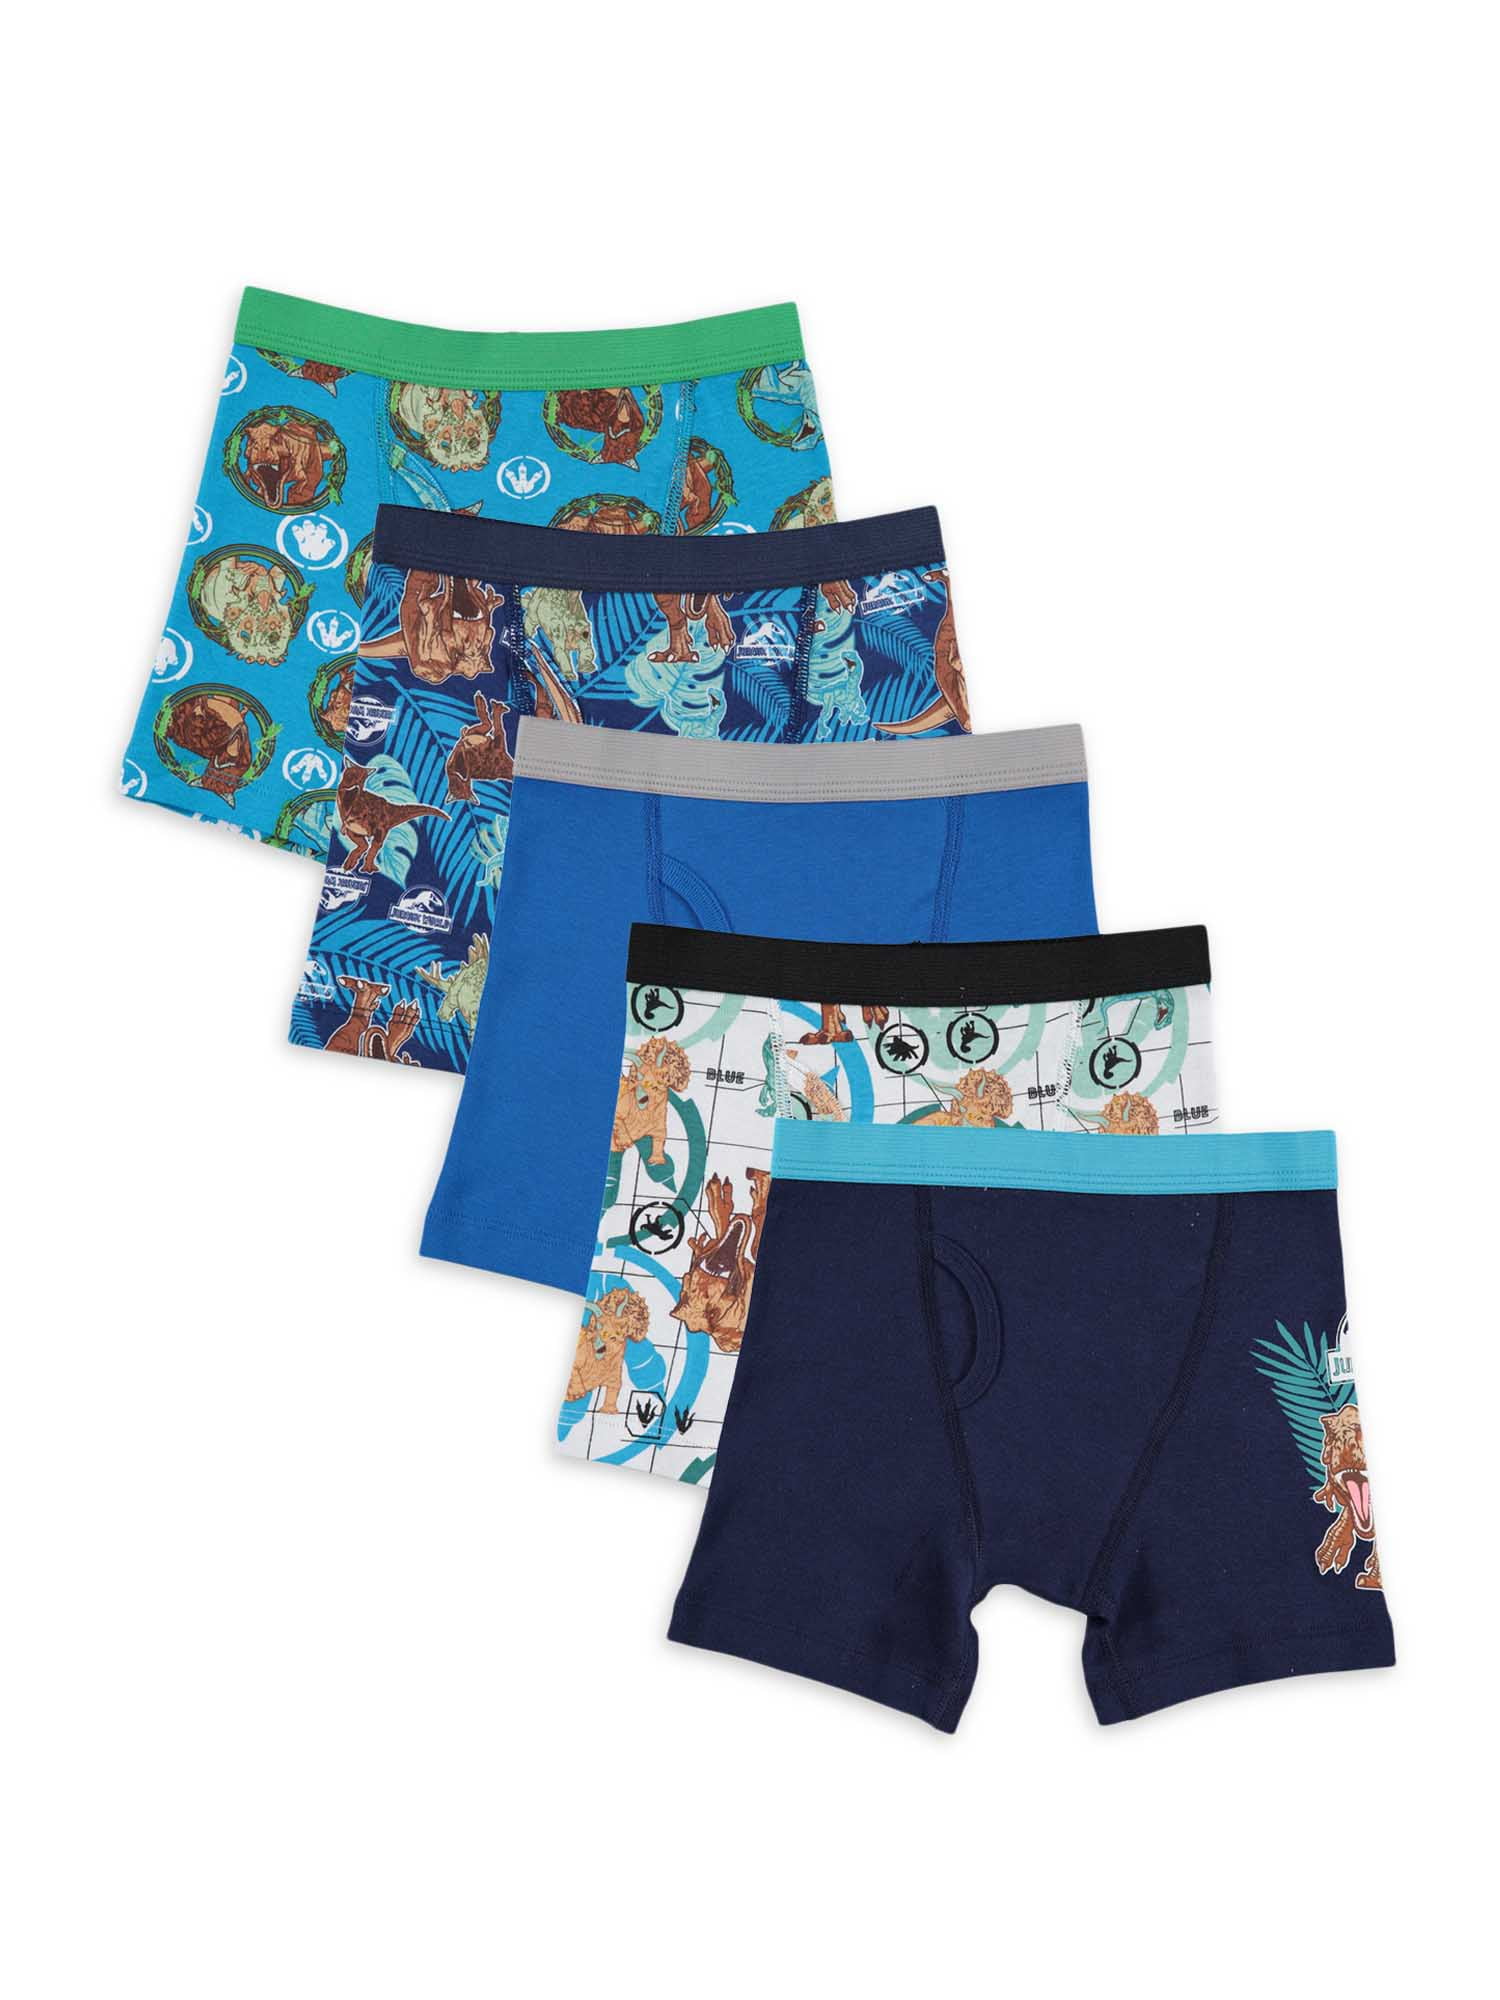 Jurassic World Boys Underwear, 5 Pack Boxer Briefs Sizes 4-8